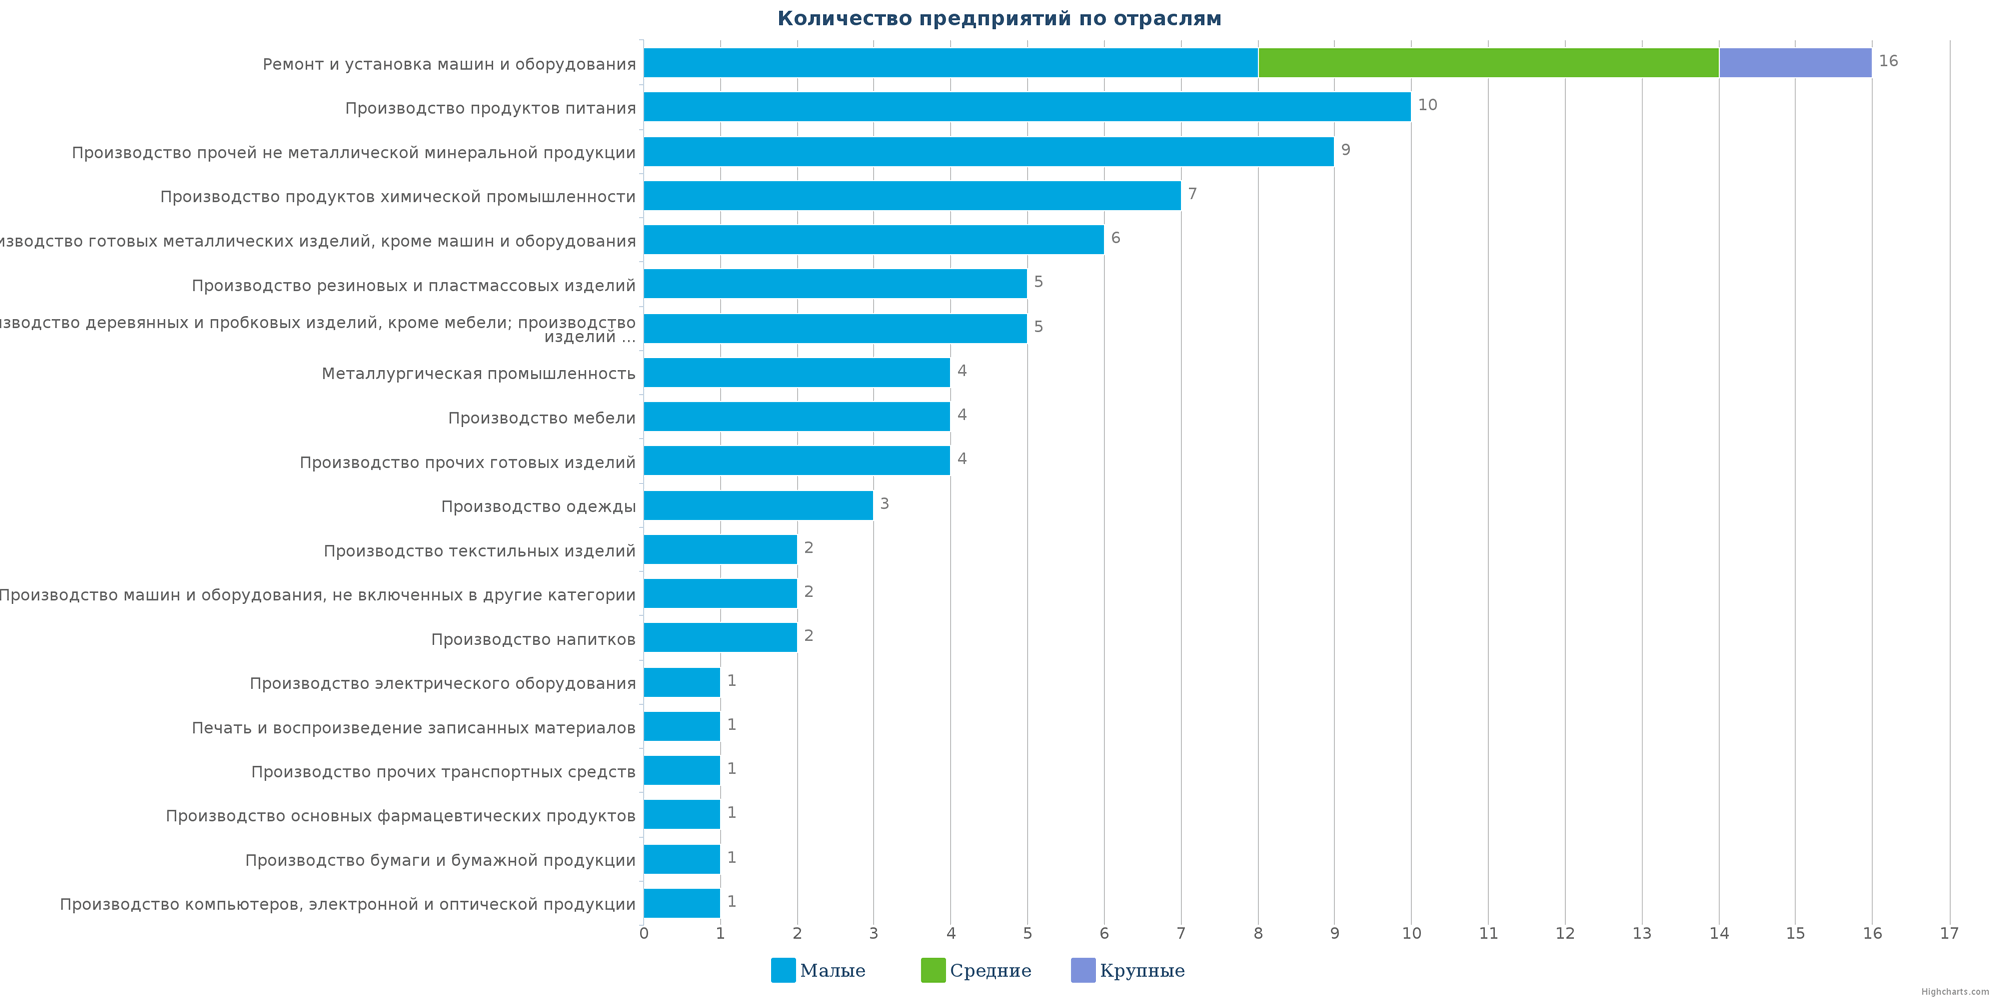 Количество ликвидированных производственных предприятий в РК по отраслям